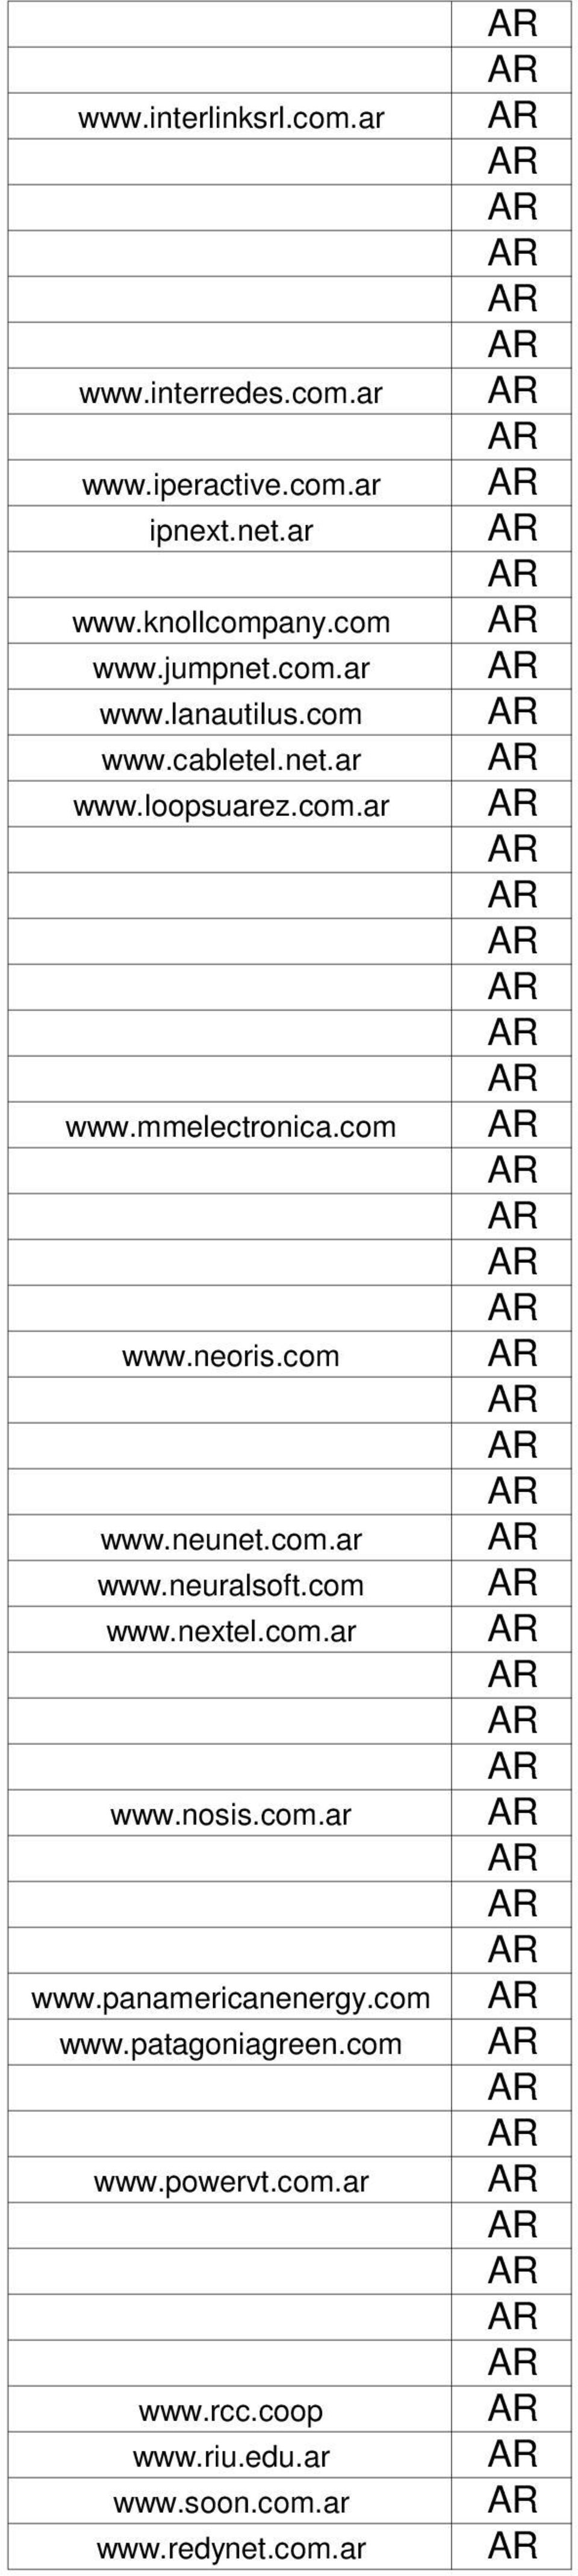 com www.neoris.com www.neunet.com.ar www.neuralsoft.com www.nextel.com.ar www.nosis.com.ar www.panamericanenergy.